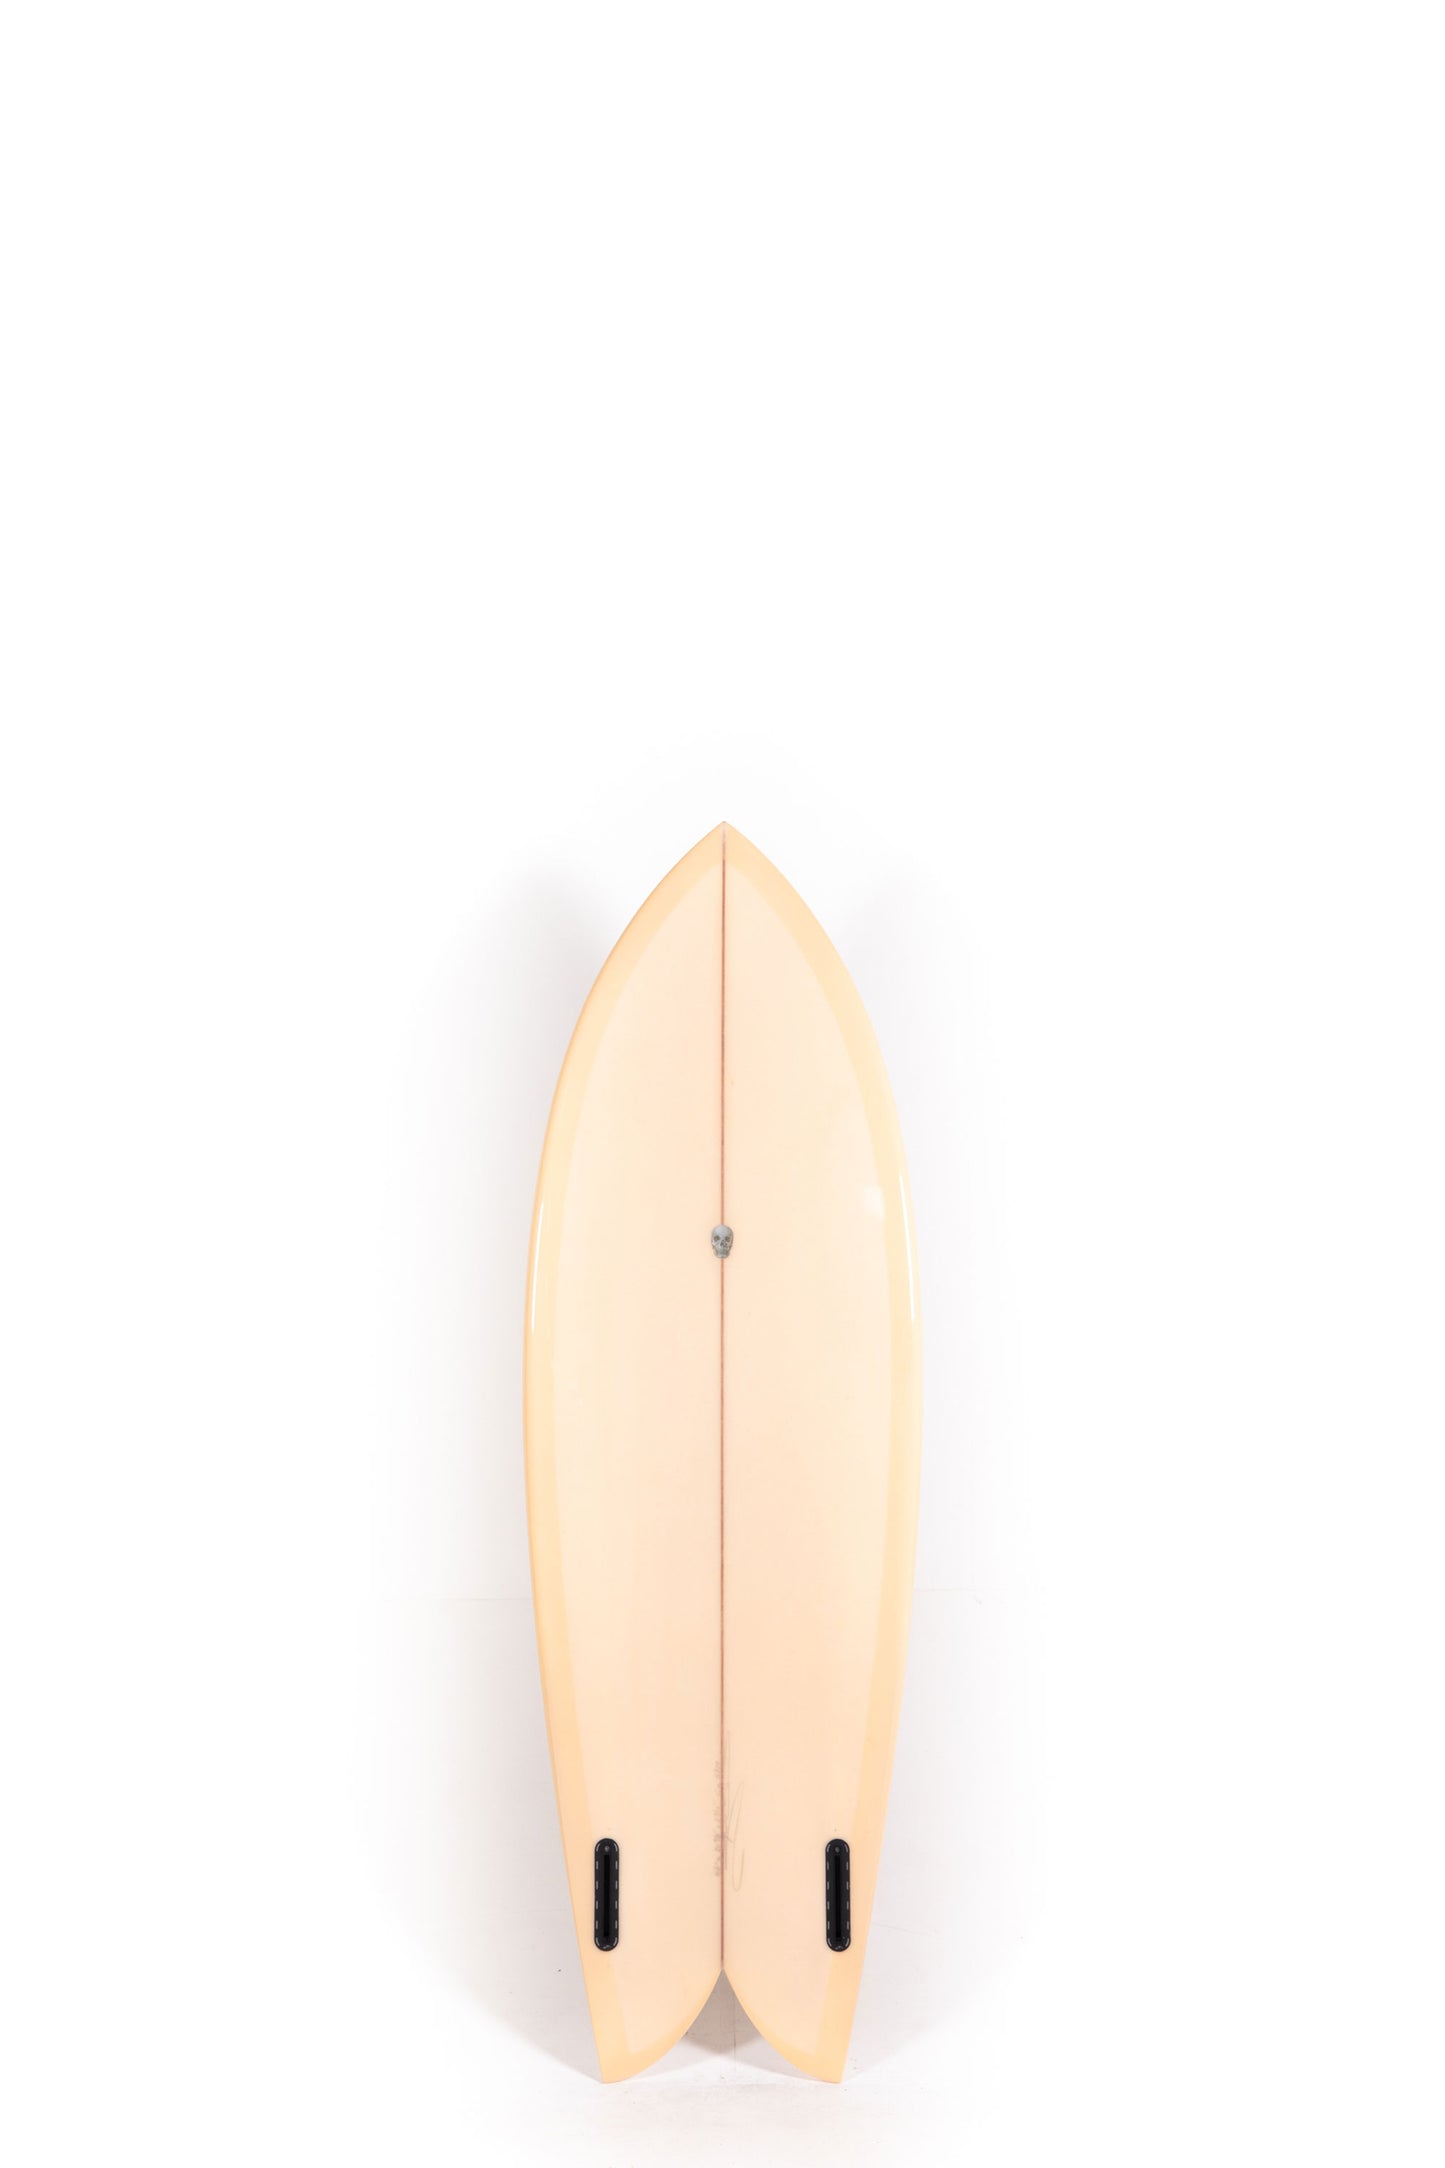 Pukas Surf Shop - Christenson Surfboards - CHRIS FISH - 5'6" x 20 7/8 x 2 7/16 - 33.36L -CX05719